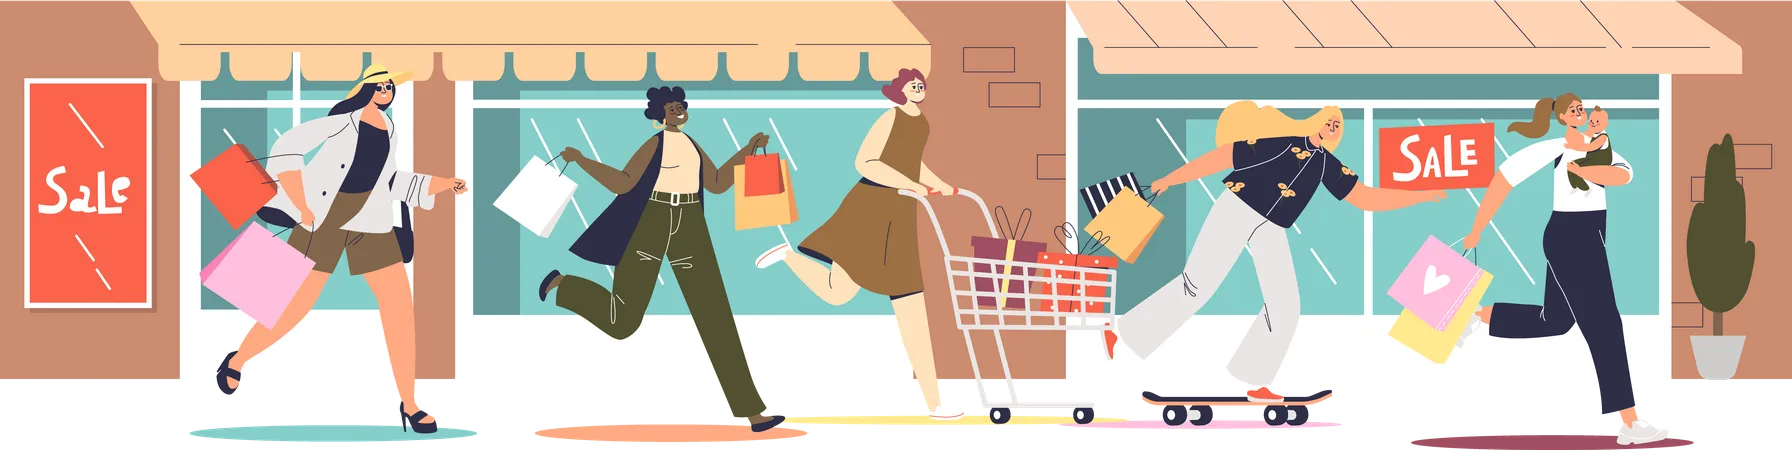 Mujeres corriendo para comprar en la tienda  Ilustración